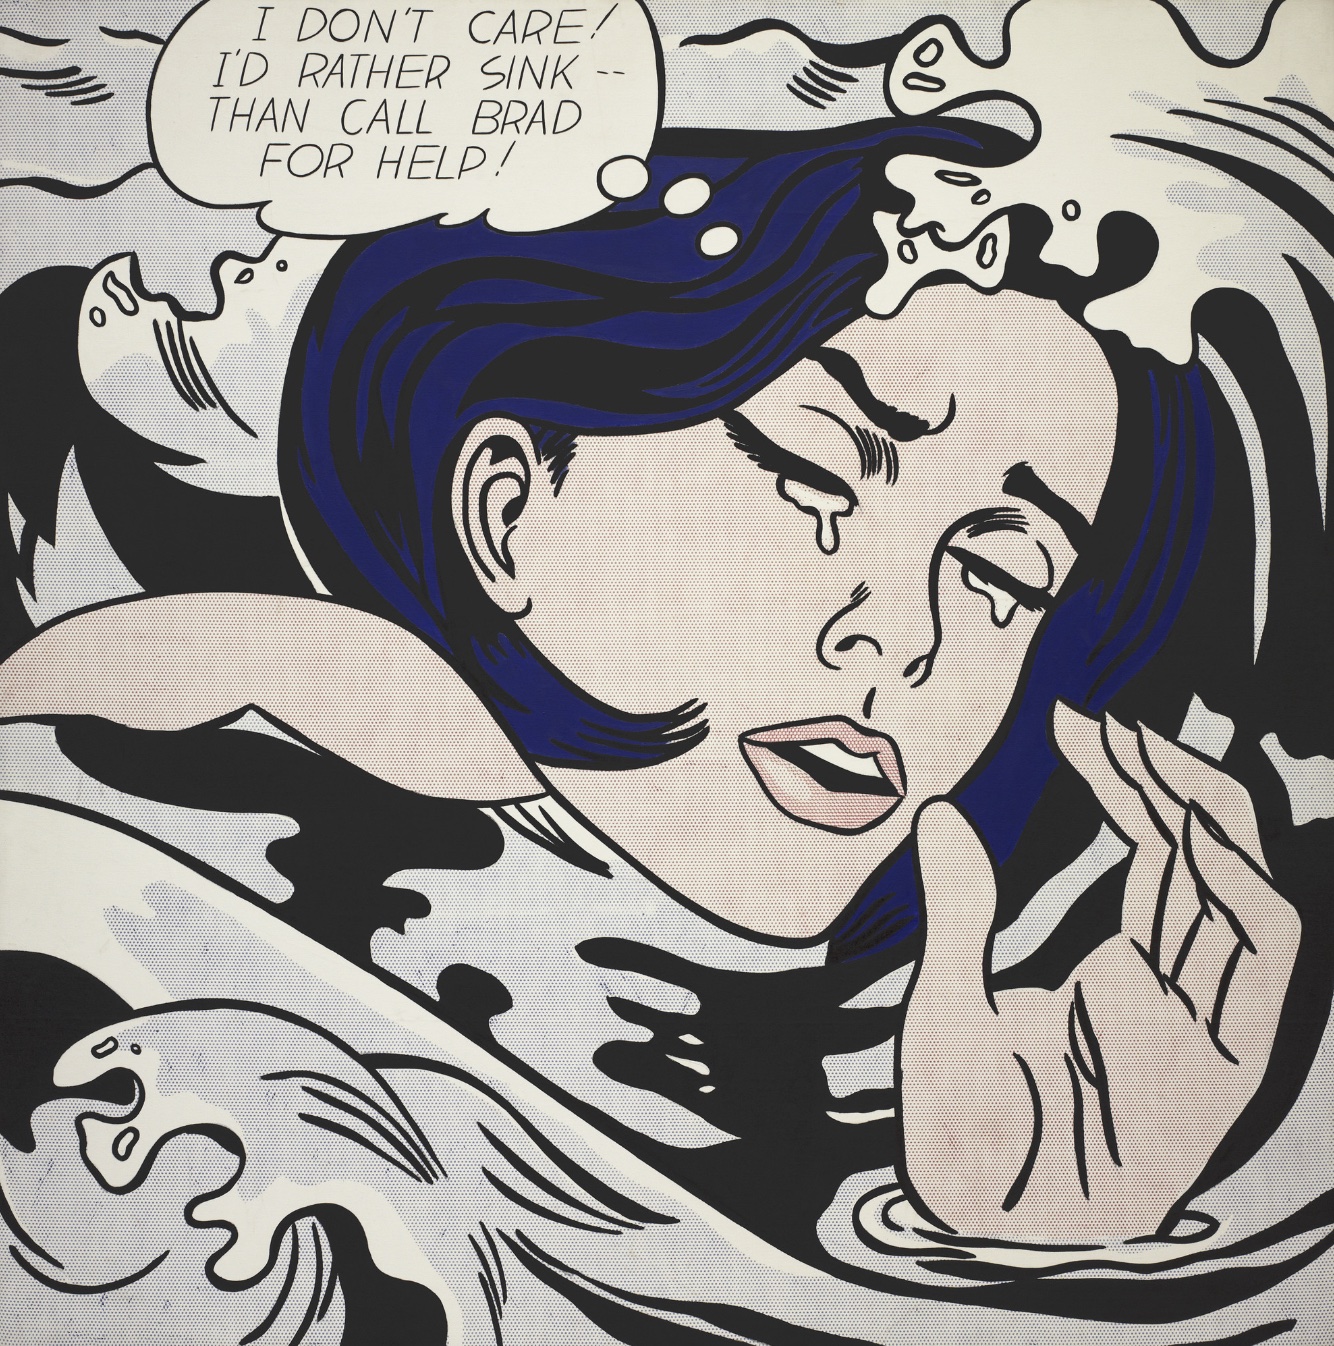 Drowning Girl de Roy Lichtenstein: presenta la imagen de la mujer llorando del cómic de arriba.